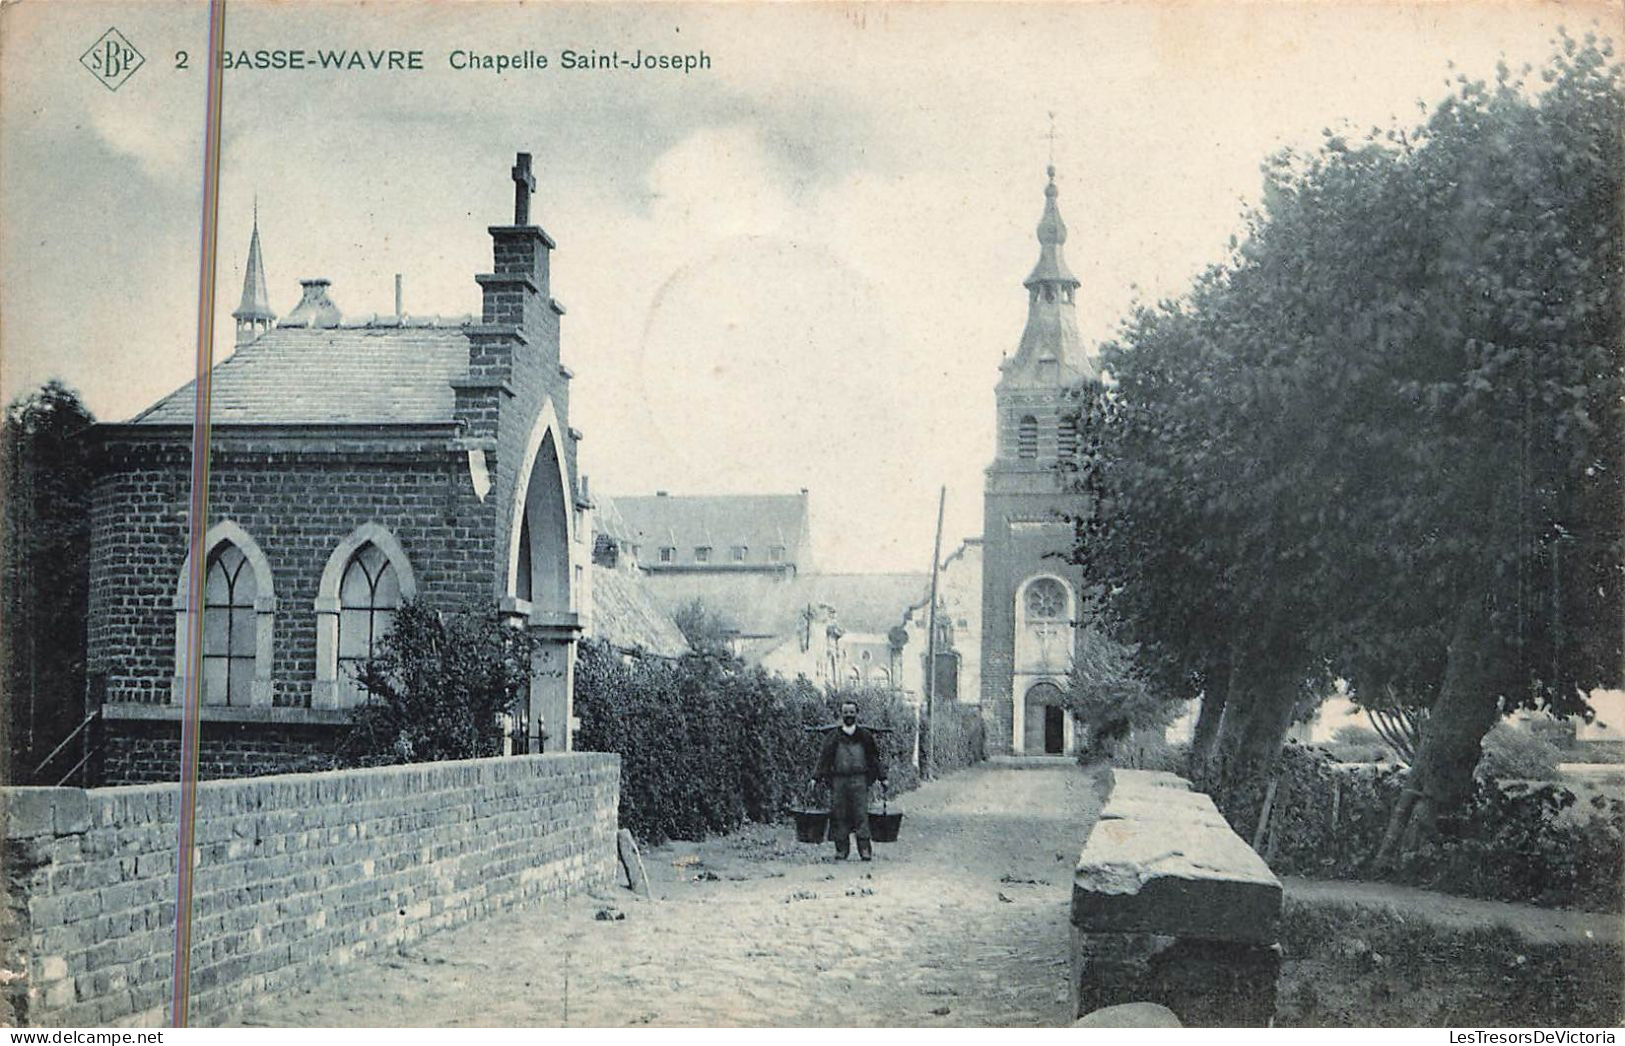 Belgique - Basse Wavree - Chapelle Saint Joseph - St Ann De Belge - Edit. De La Maison Hittich -  Carte Postale Ancienne - Wavre